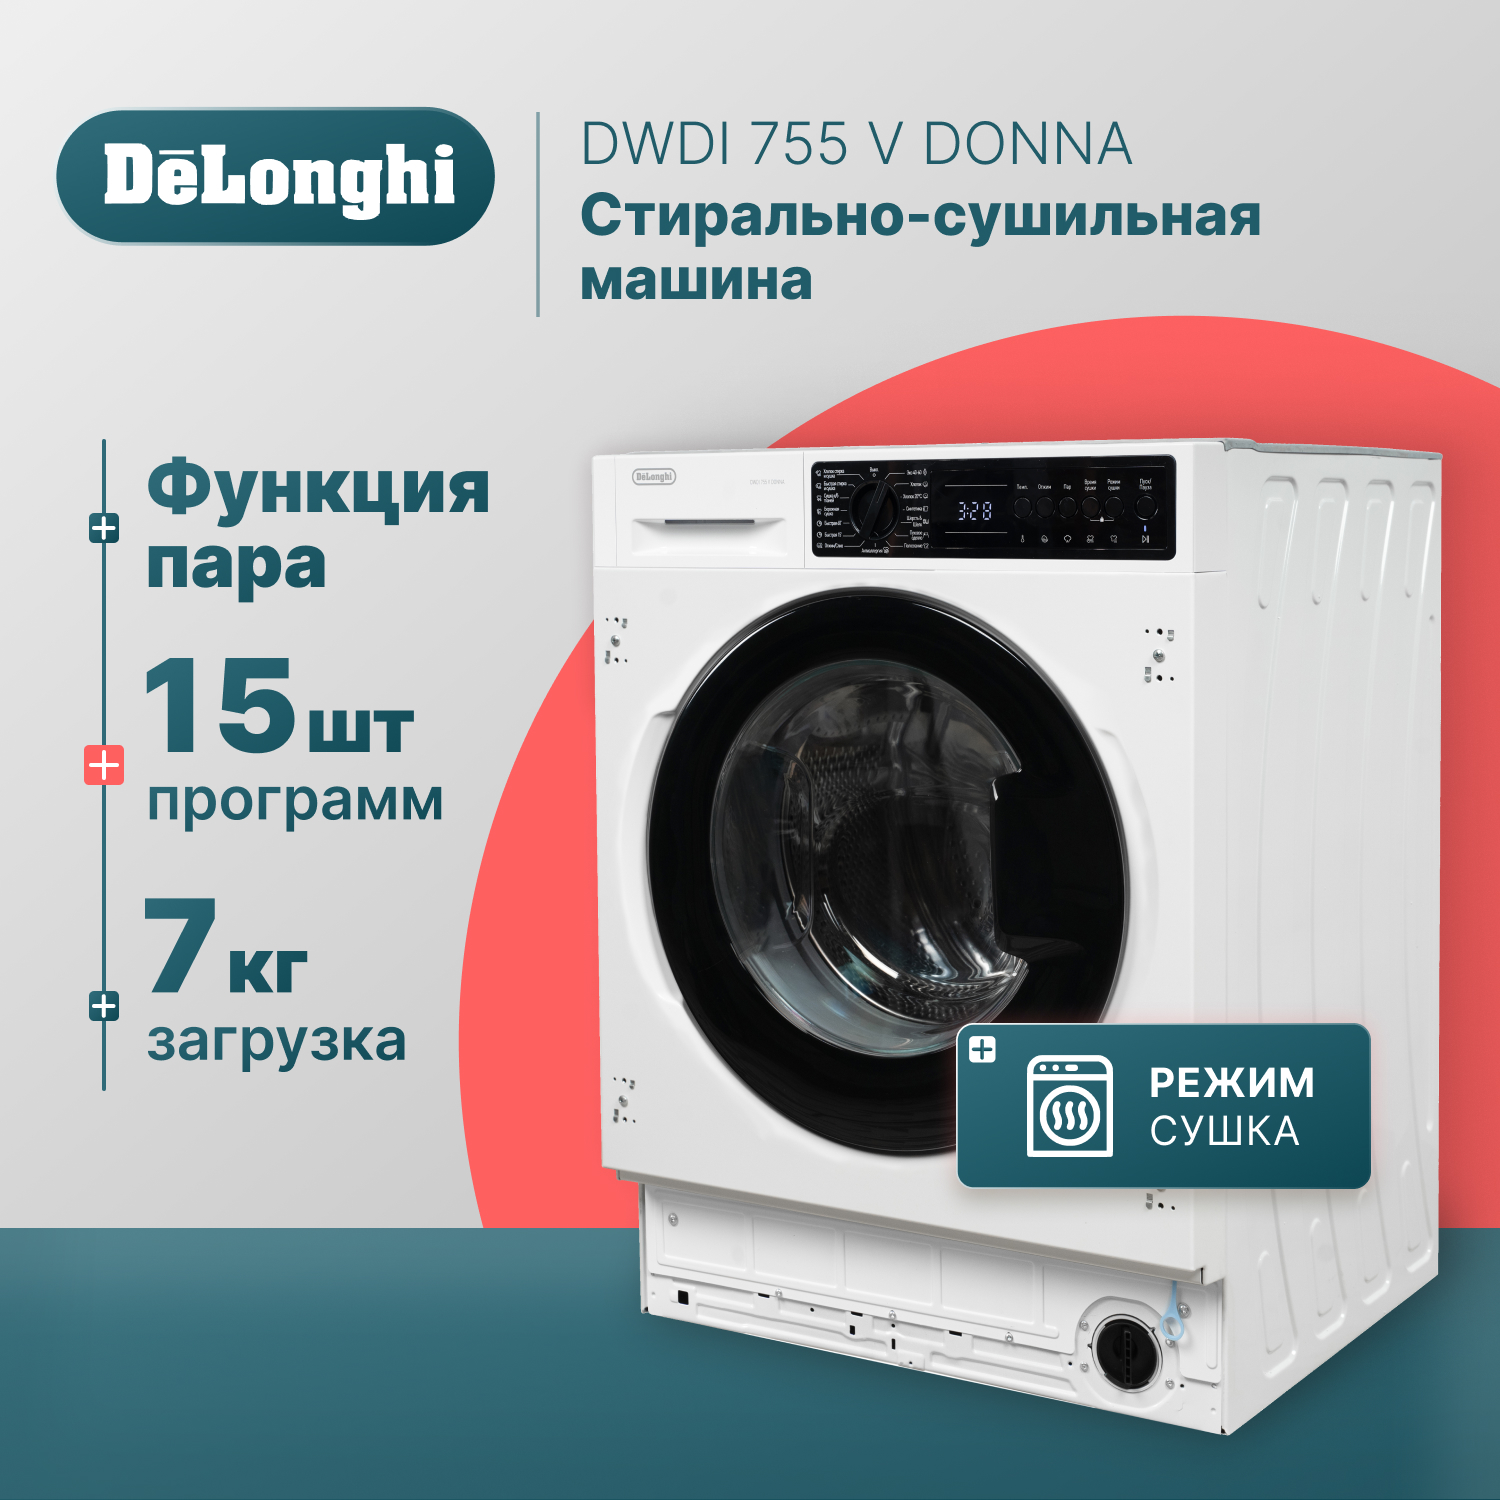 встраиваемая стиральная машина с сушкой delonghi dwdi 755 v donna Встраиваемая стиральная машина Delonghi DWDI 755 V DONNA